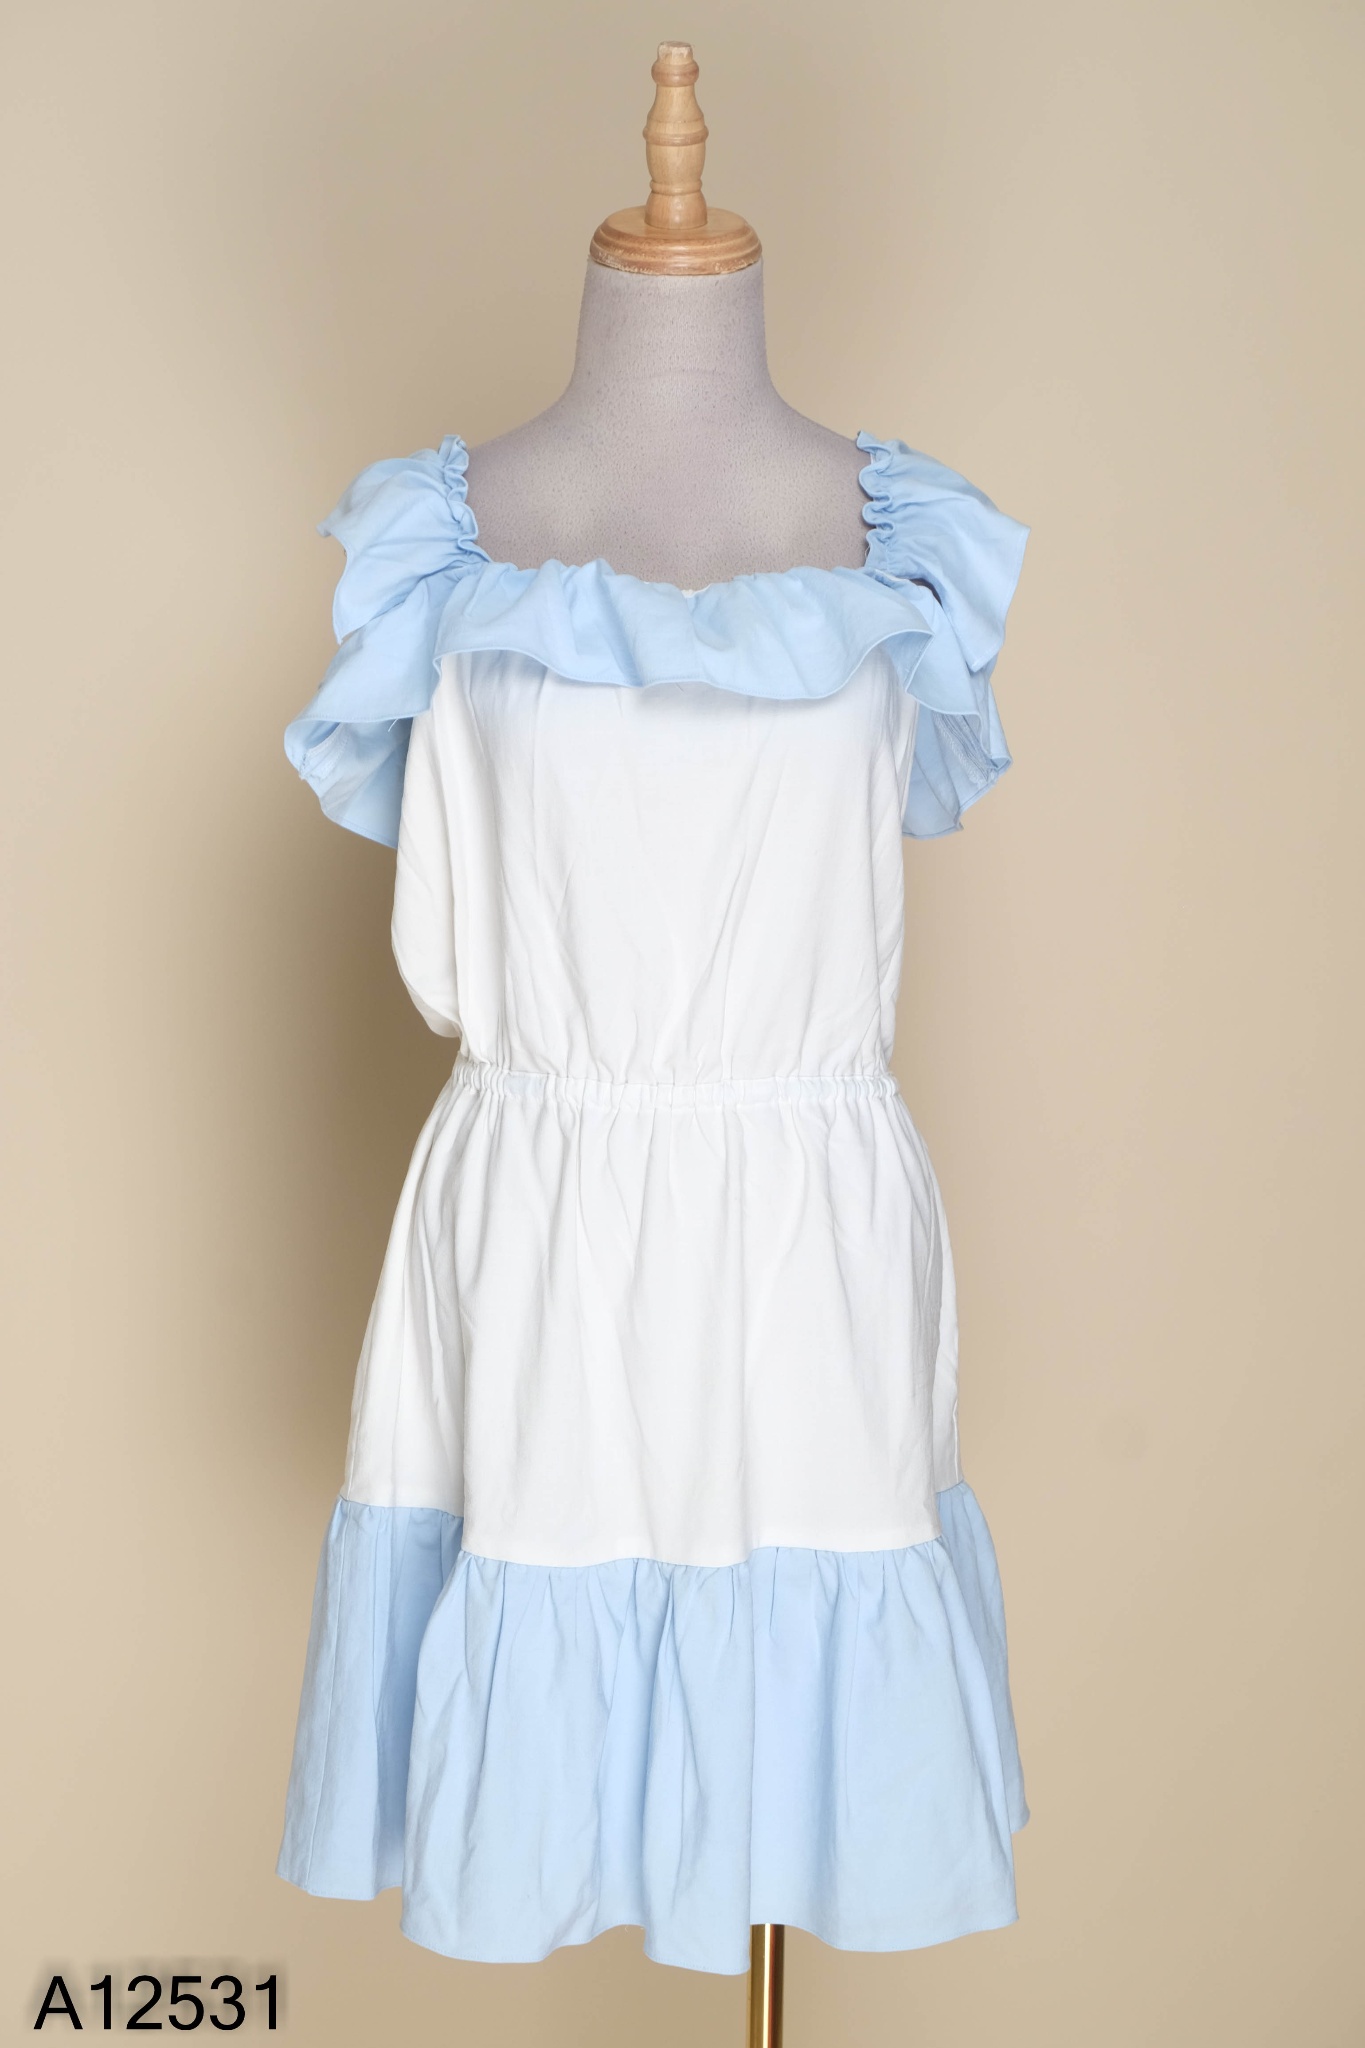 Váy thô đũi linen hãng WEST 3 màu: trắng ghi, nâu be, xanh navy